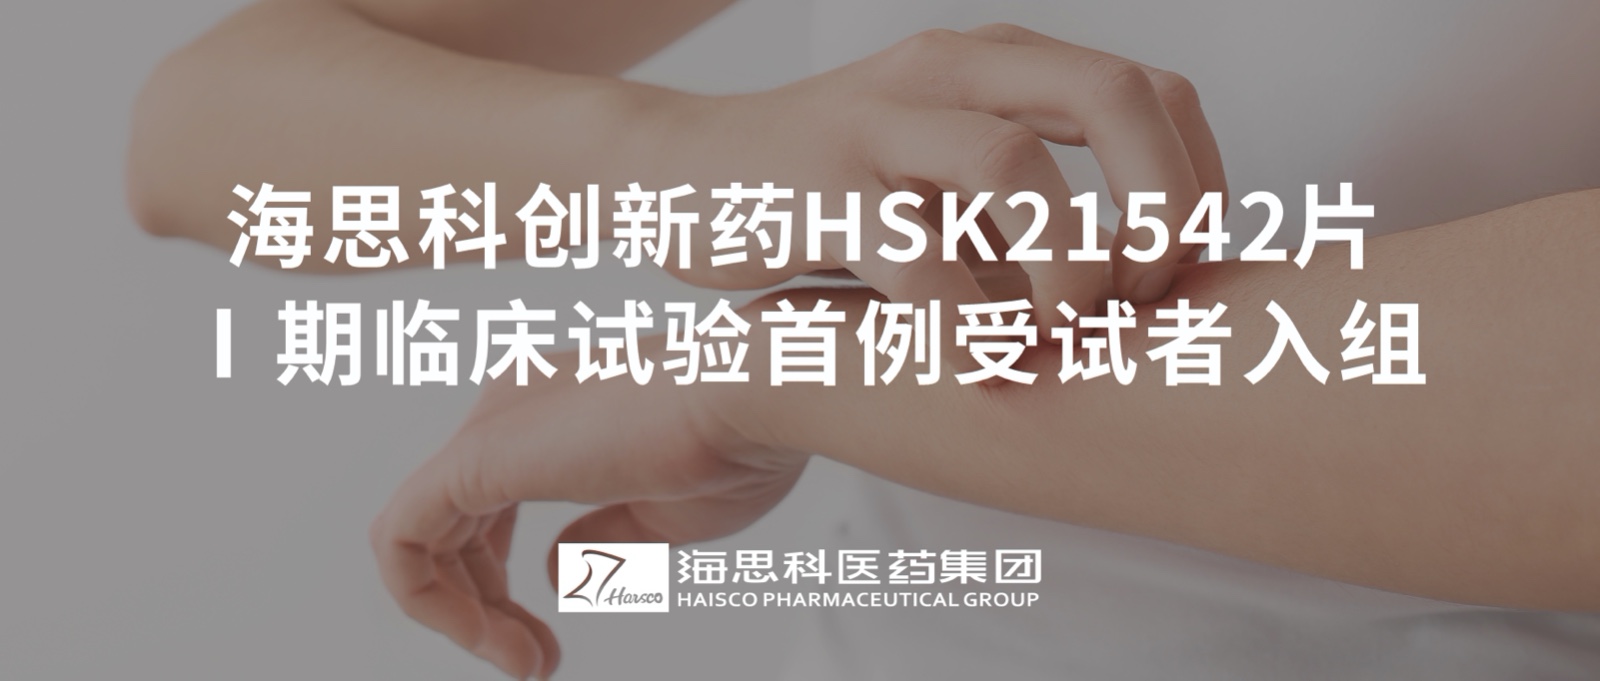 永利总站创新药HSK21542片Ⅰ期临床试验首例受试者入组